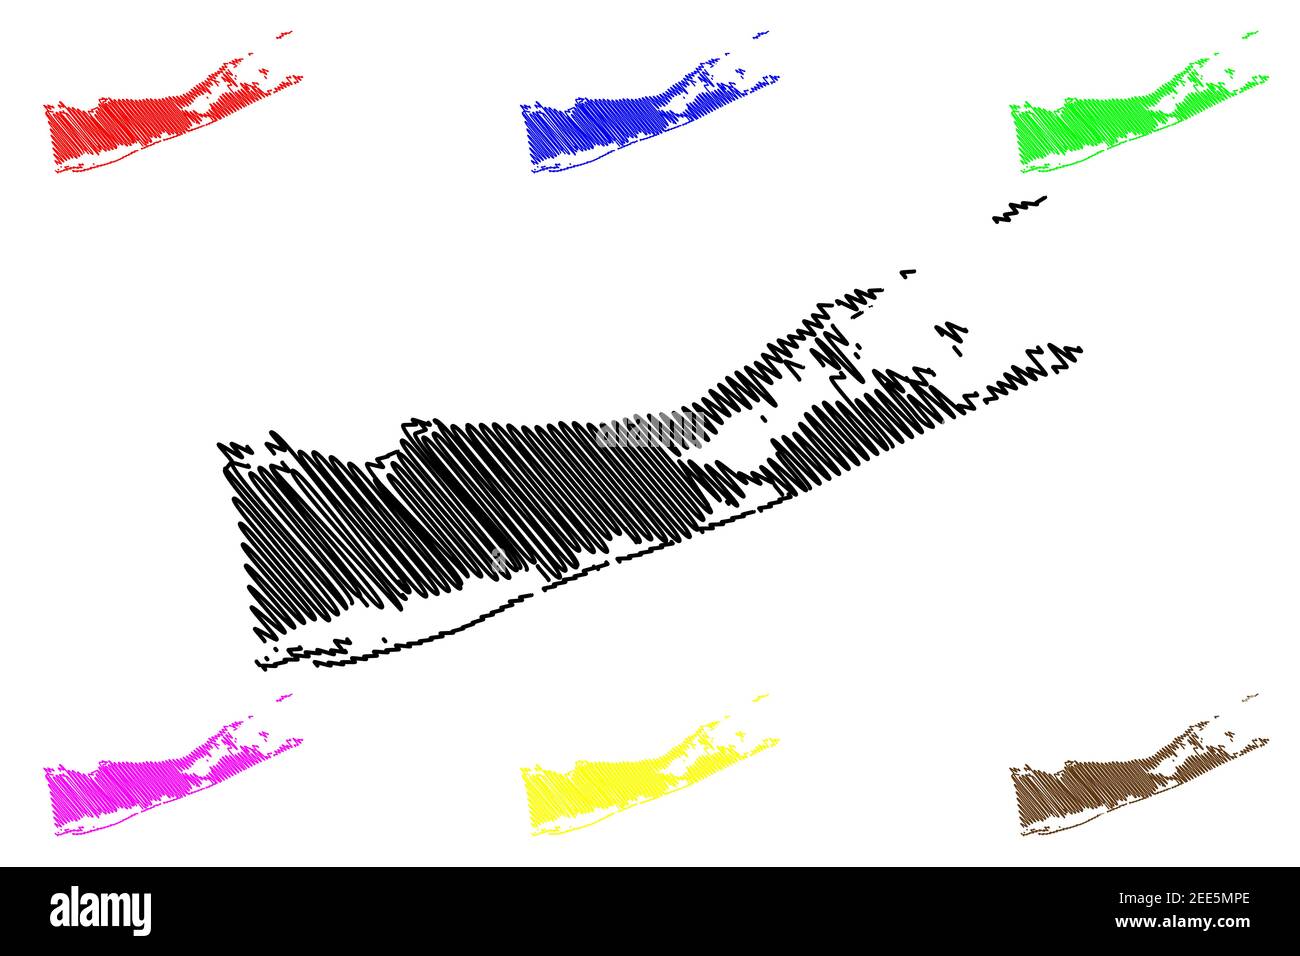 Suffolk County, New York state (Stati Uniti, Stati Uniti d'America, Stati Uniti, Stati Uniti, Stati Uniti) mappa vettoriale, schizzo mappa Suffolk Illustrazione Vettoriale